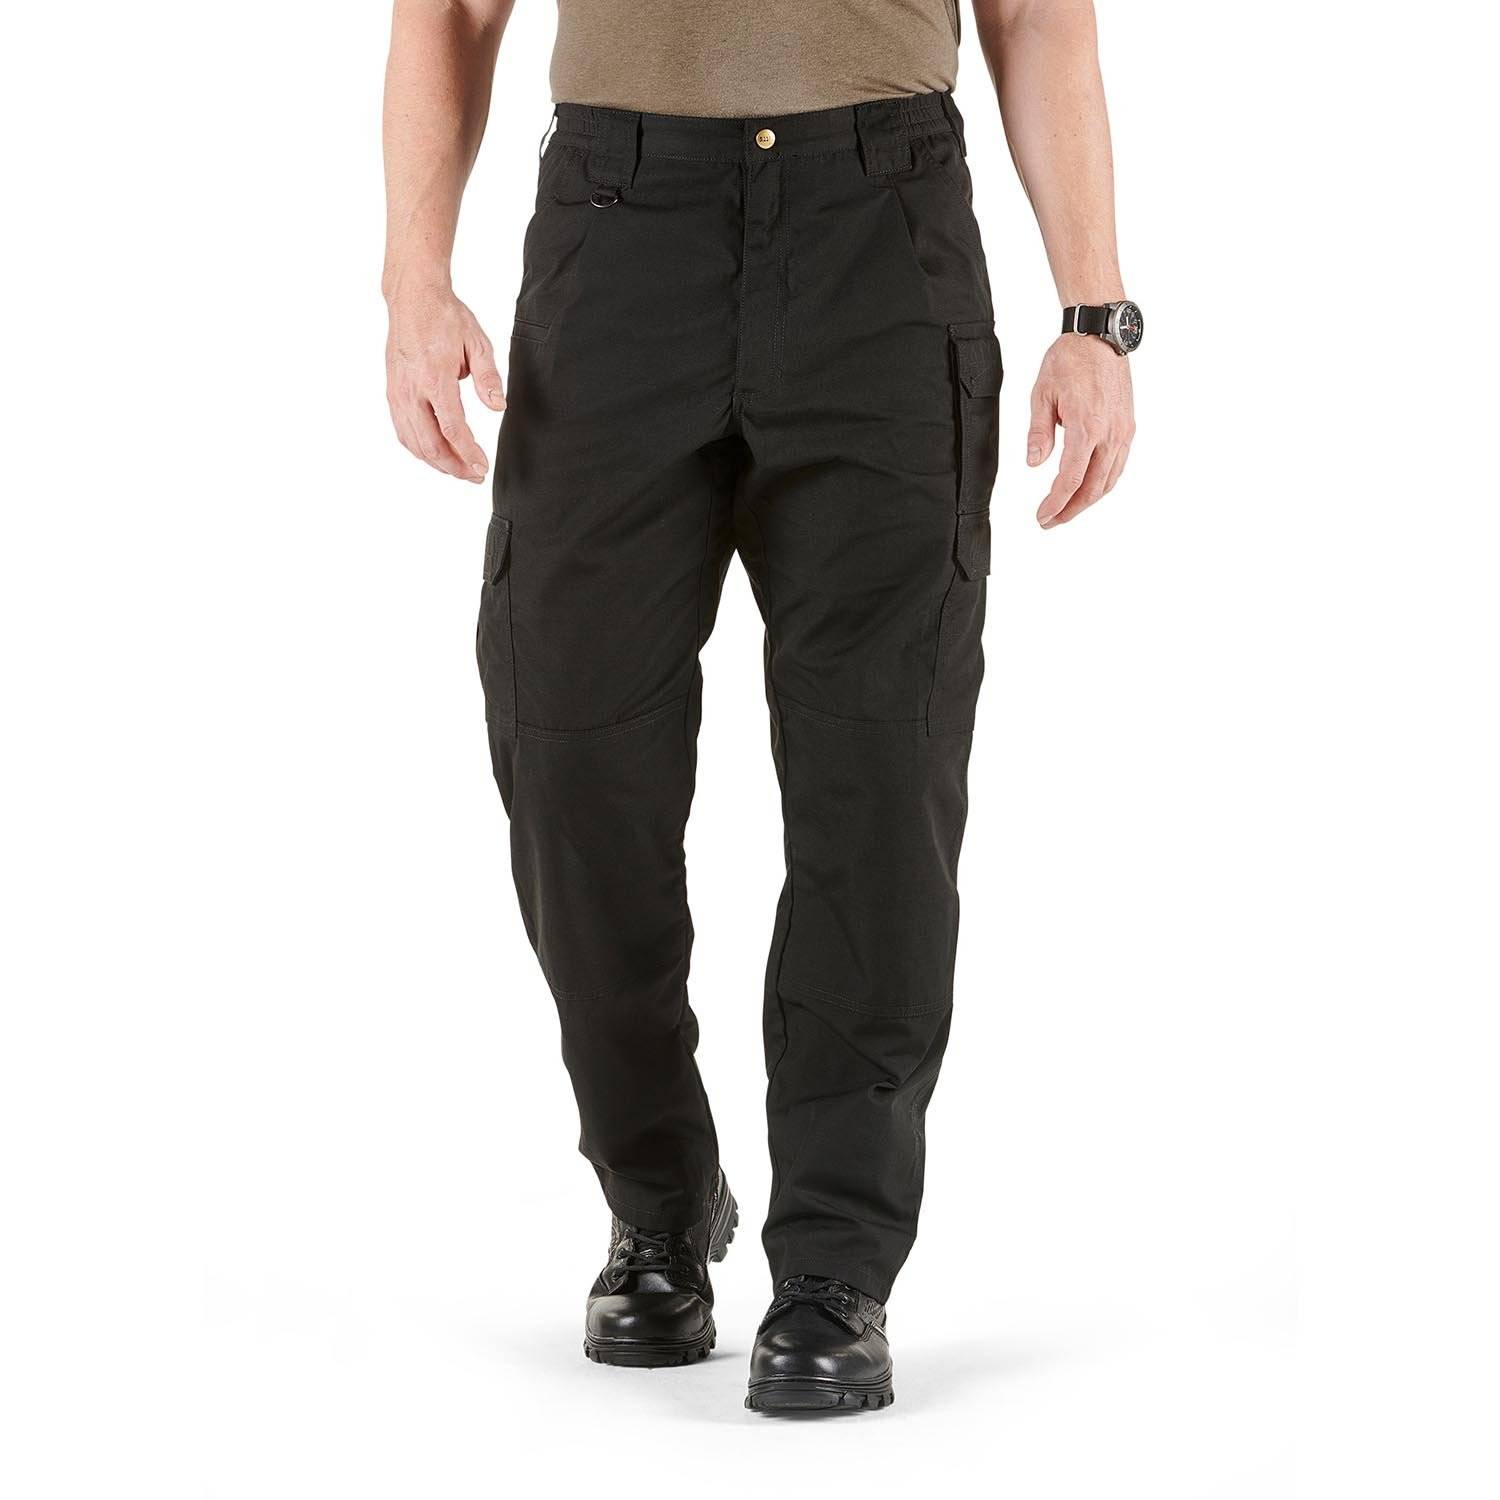 5.11 Tactical® Cotton Canvas Pants - Durable & Comfortable